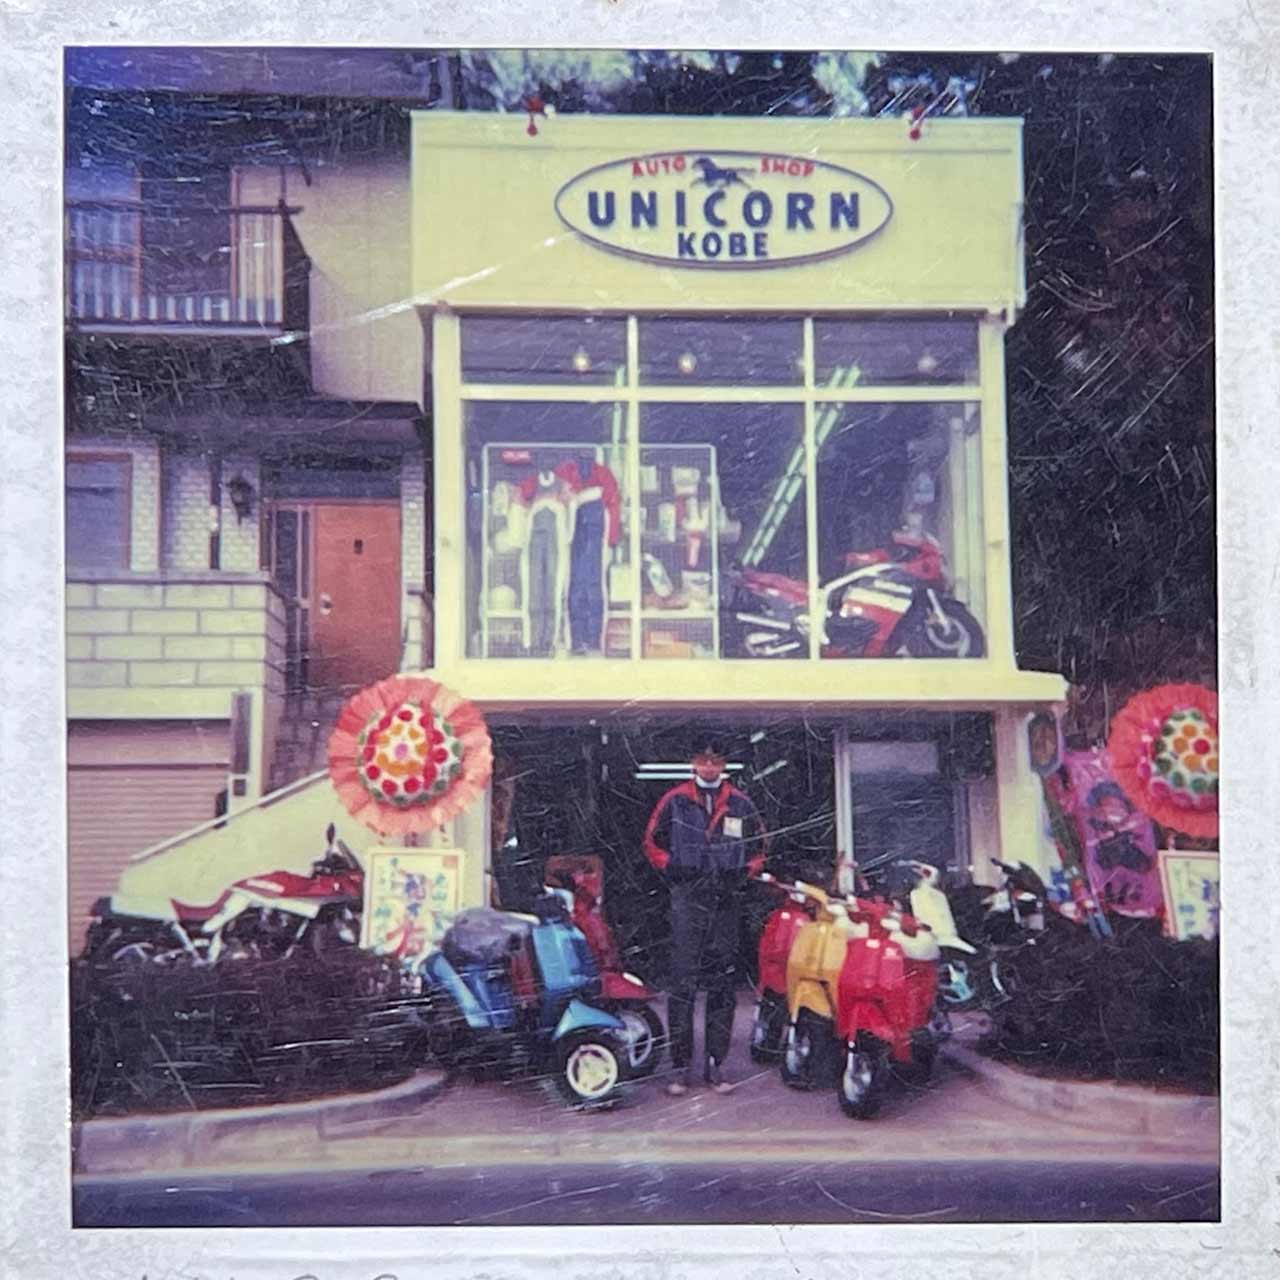 神戸ユニコーン開店日のスナップ。店名は、スズキ在籍時に店長を務めた直営バイクショップ・スズキビークル店で運営していたツーリングクラブの名称からとったものだ